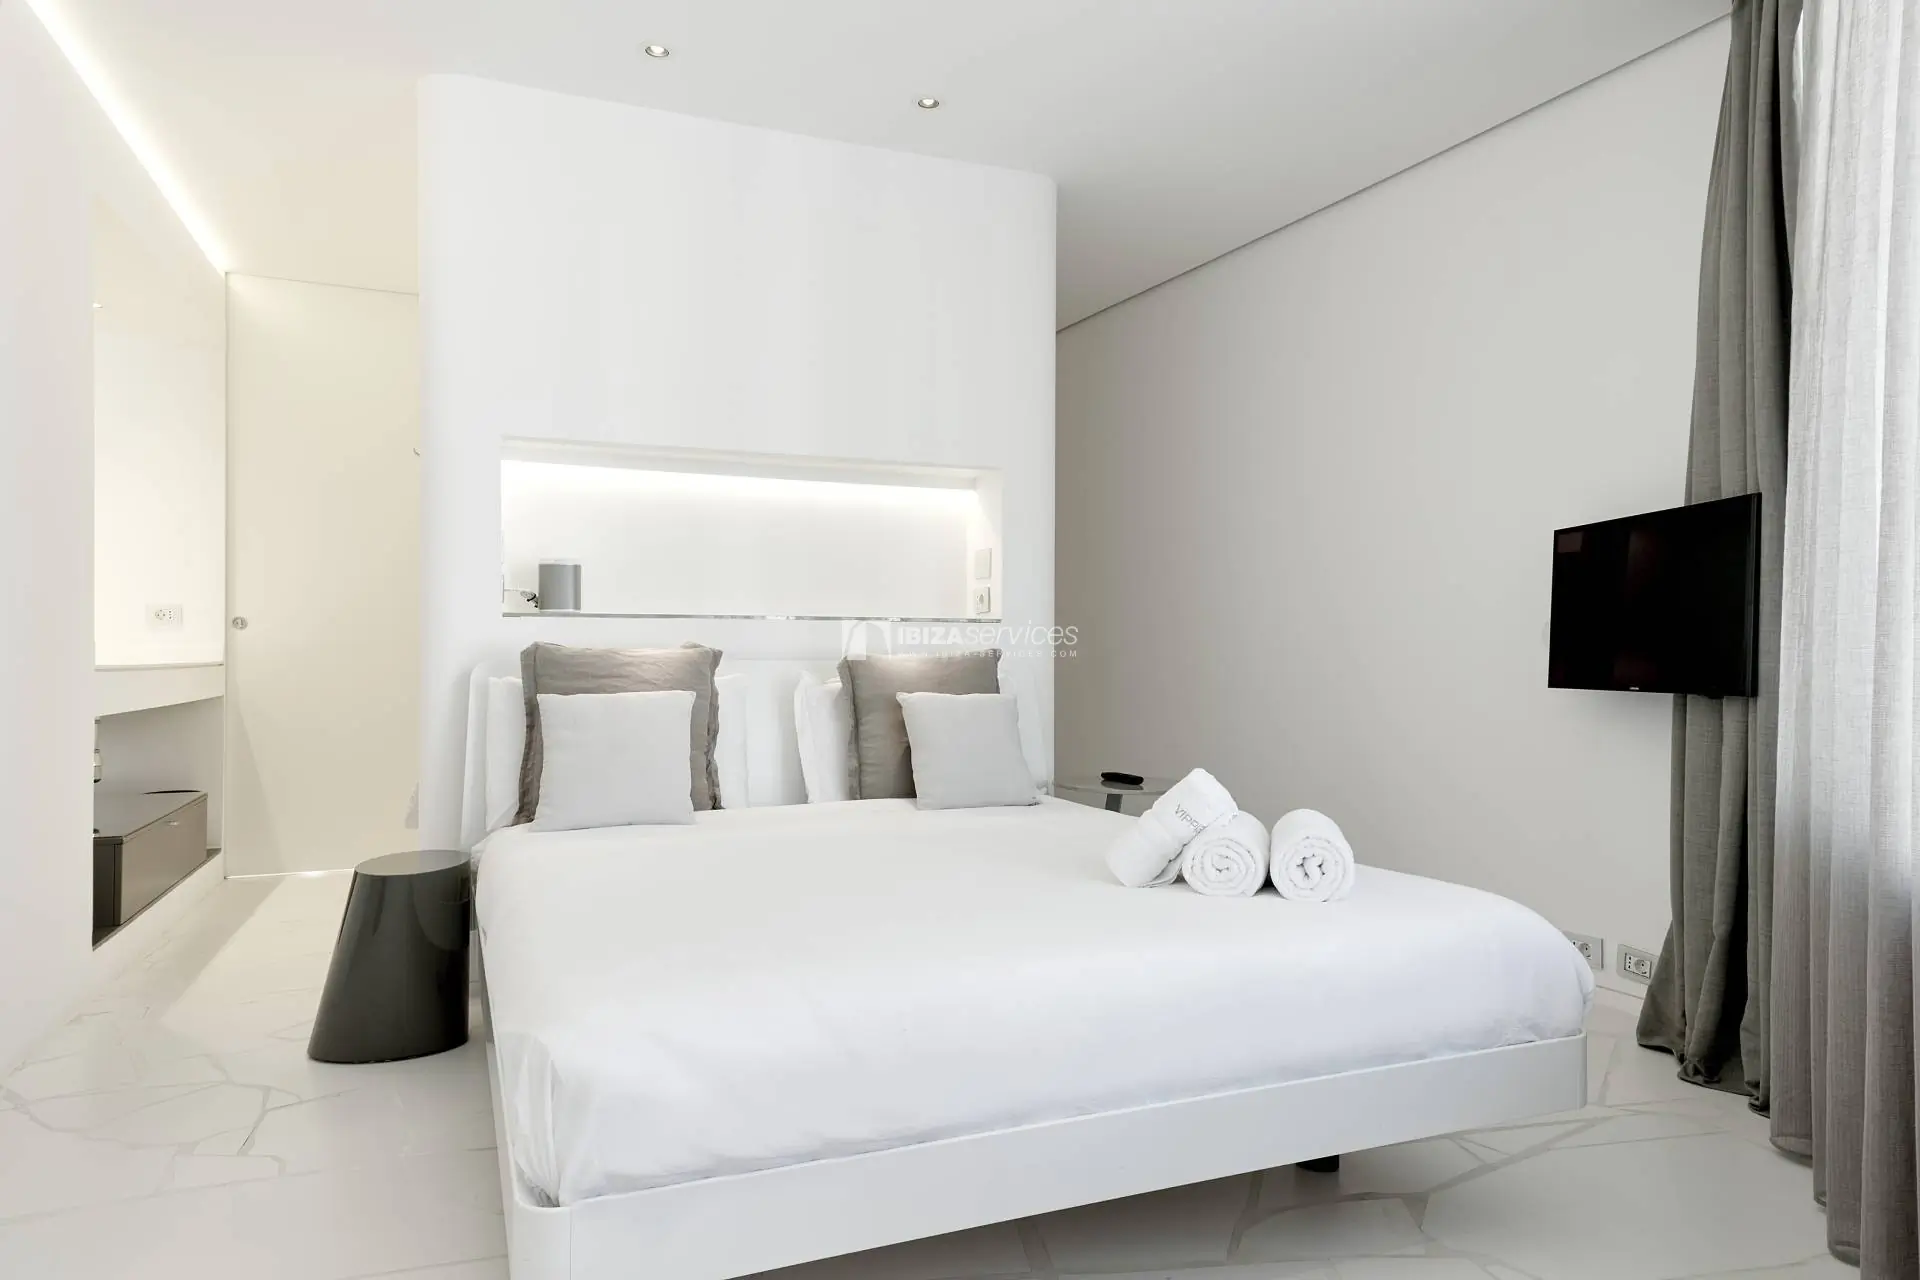 4041 Alquiler de apartamento de lujo de 2 dormitorios Las Boas de Ibiza.